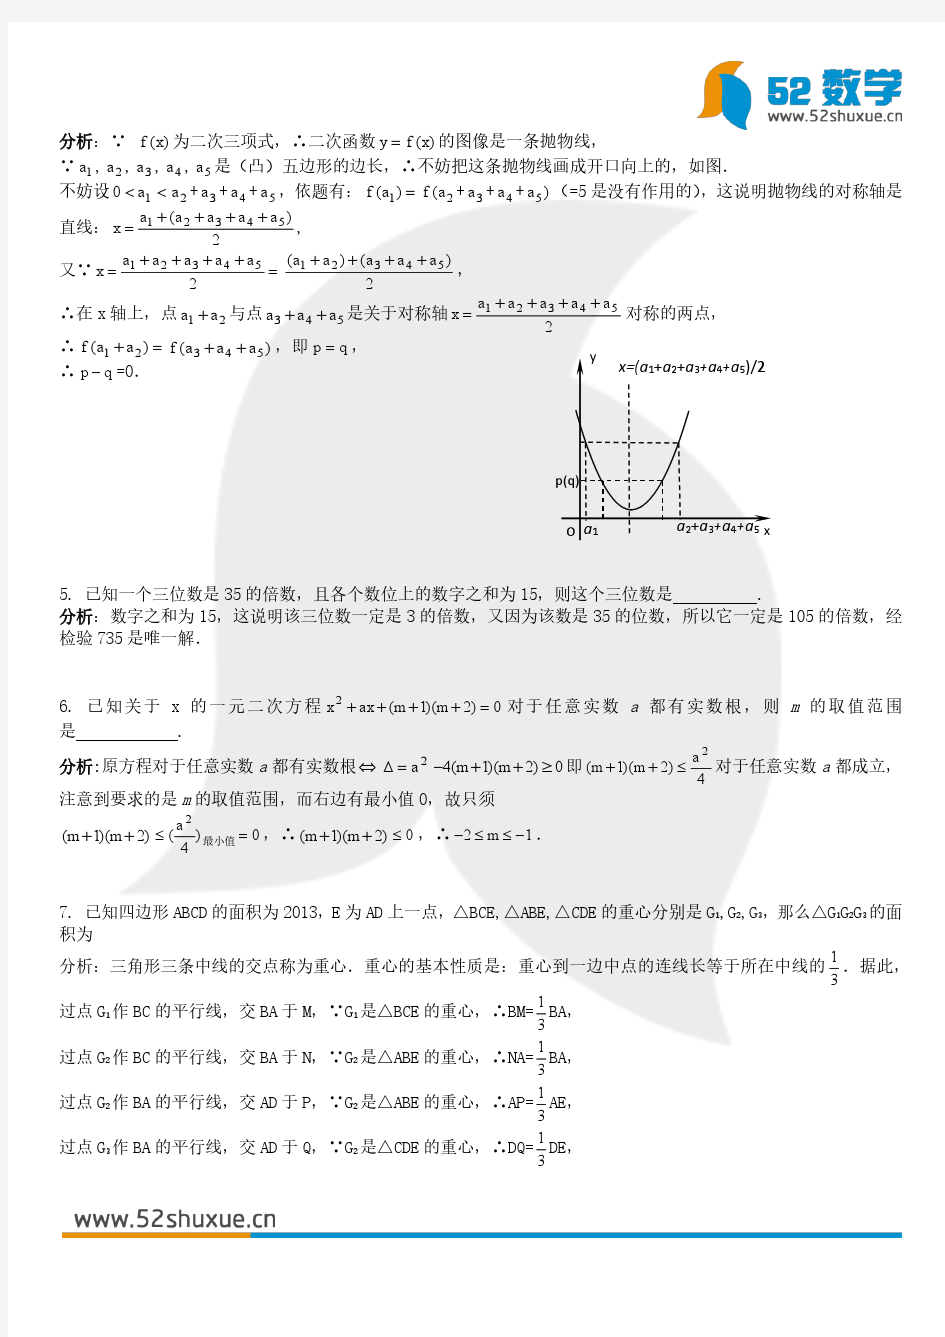 2013年新知杯上海市初中数学竞赛试题及参考答案